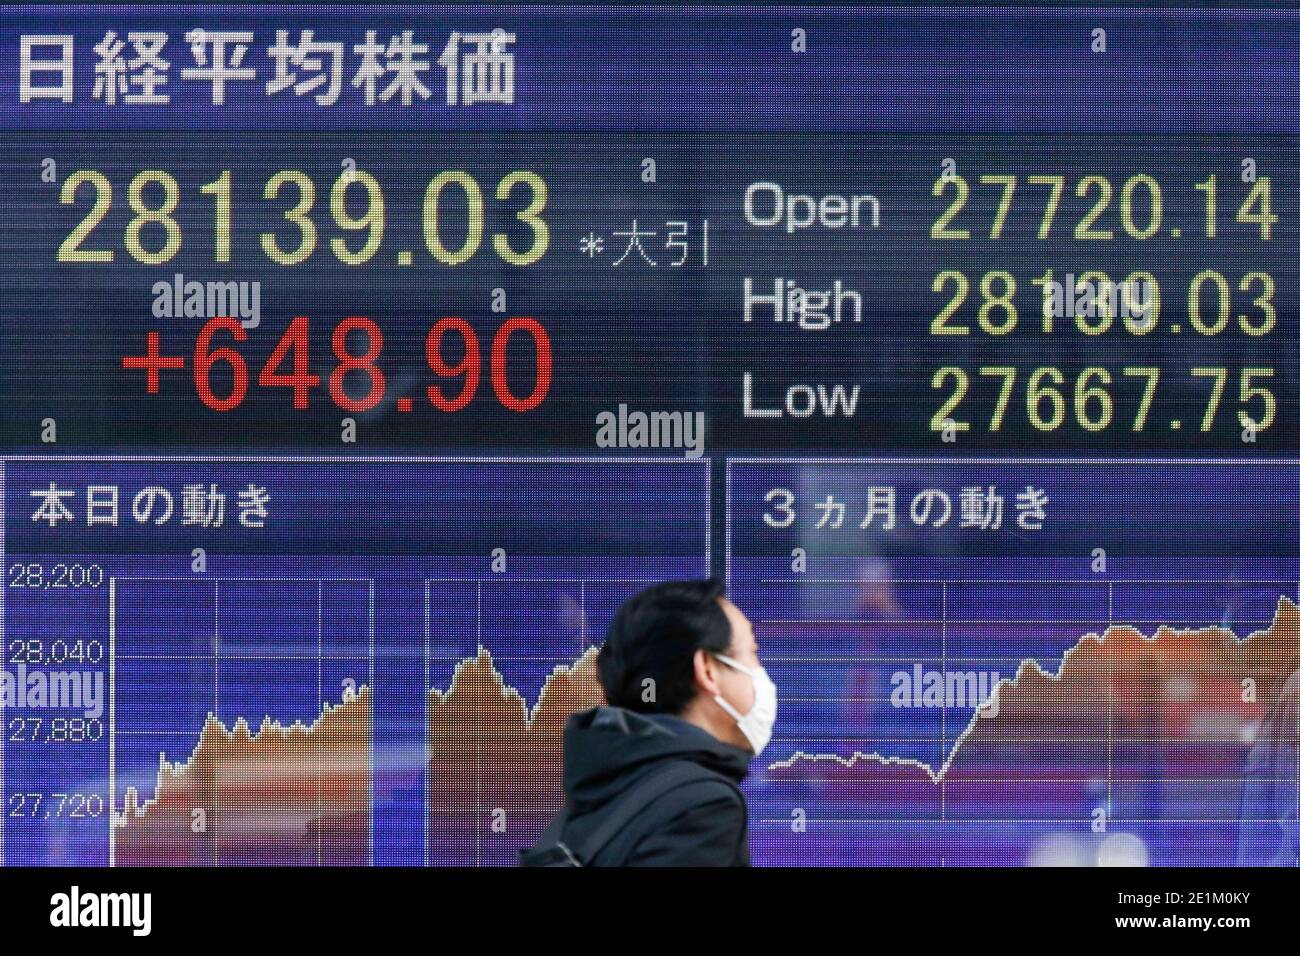 08 de enero de 2021, Tokio, Japón - un hombre que lleva una máscara de cara pasa por un tablero de valores electrónico mostrando el Nikkei Stock Average de Japón, que aumentó 648.90 puntos o 2.36 por ciento para cerrar a 28,139.03. El índice japonés Nikkei subió un 2.36% para alcanzar un nuevo máximo de 5 años. Crédito: Rodrigo Reyes Marín/Alamy Live News Foto de stock